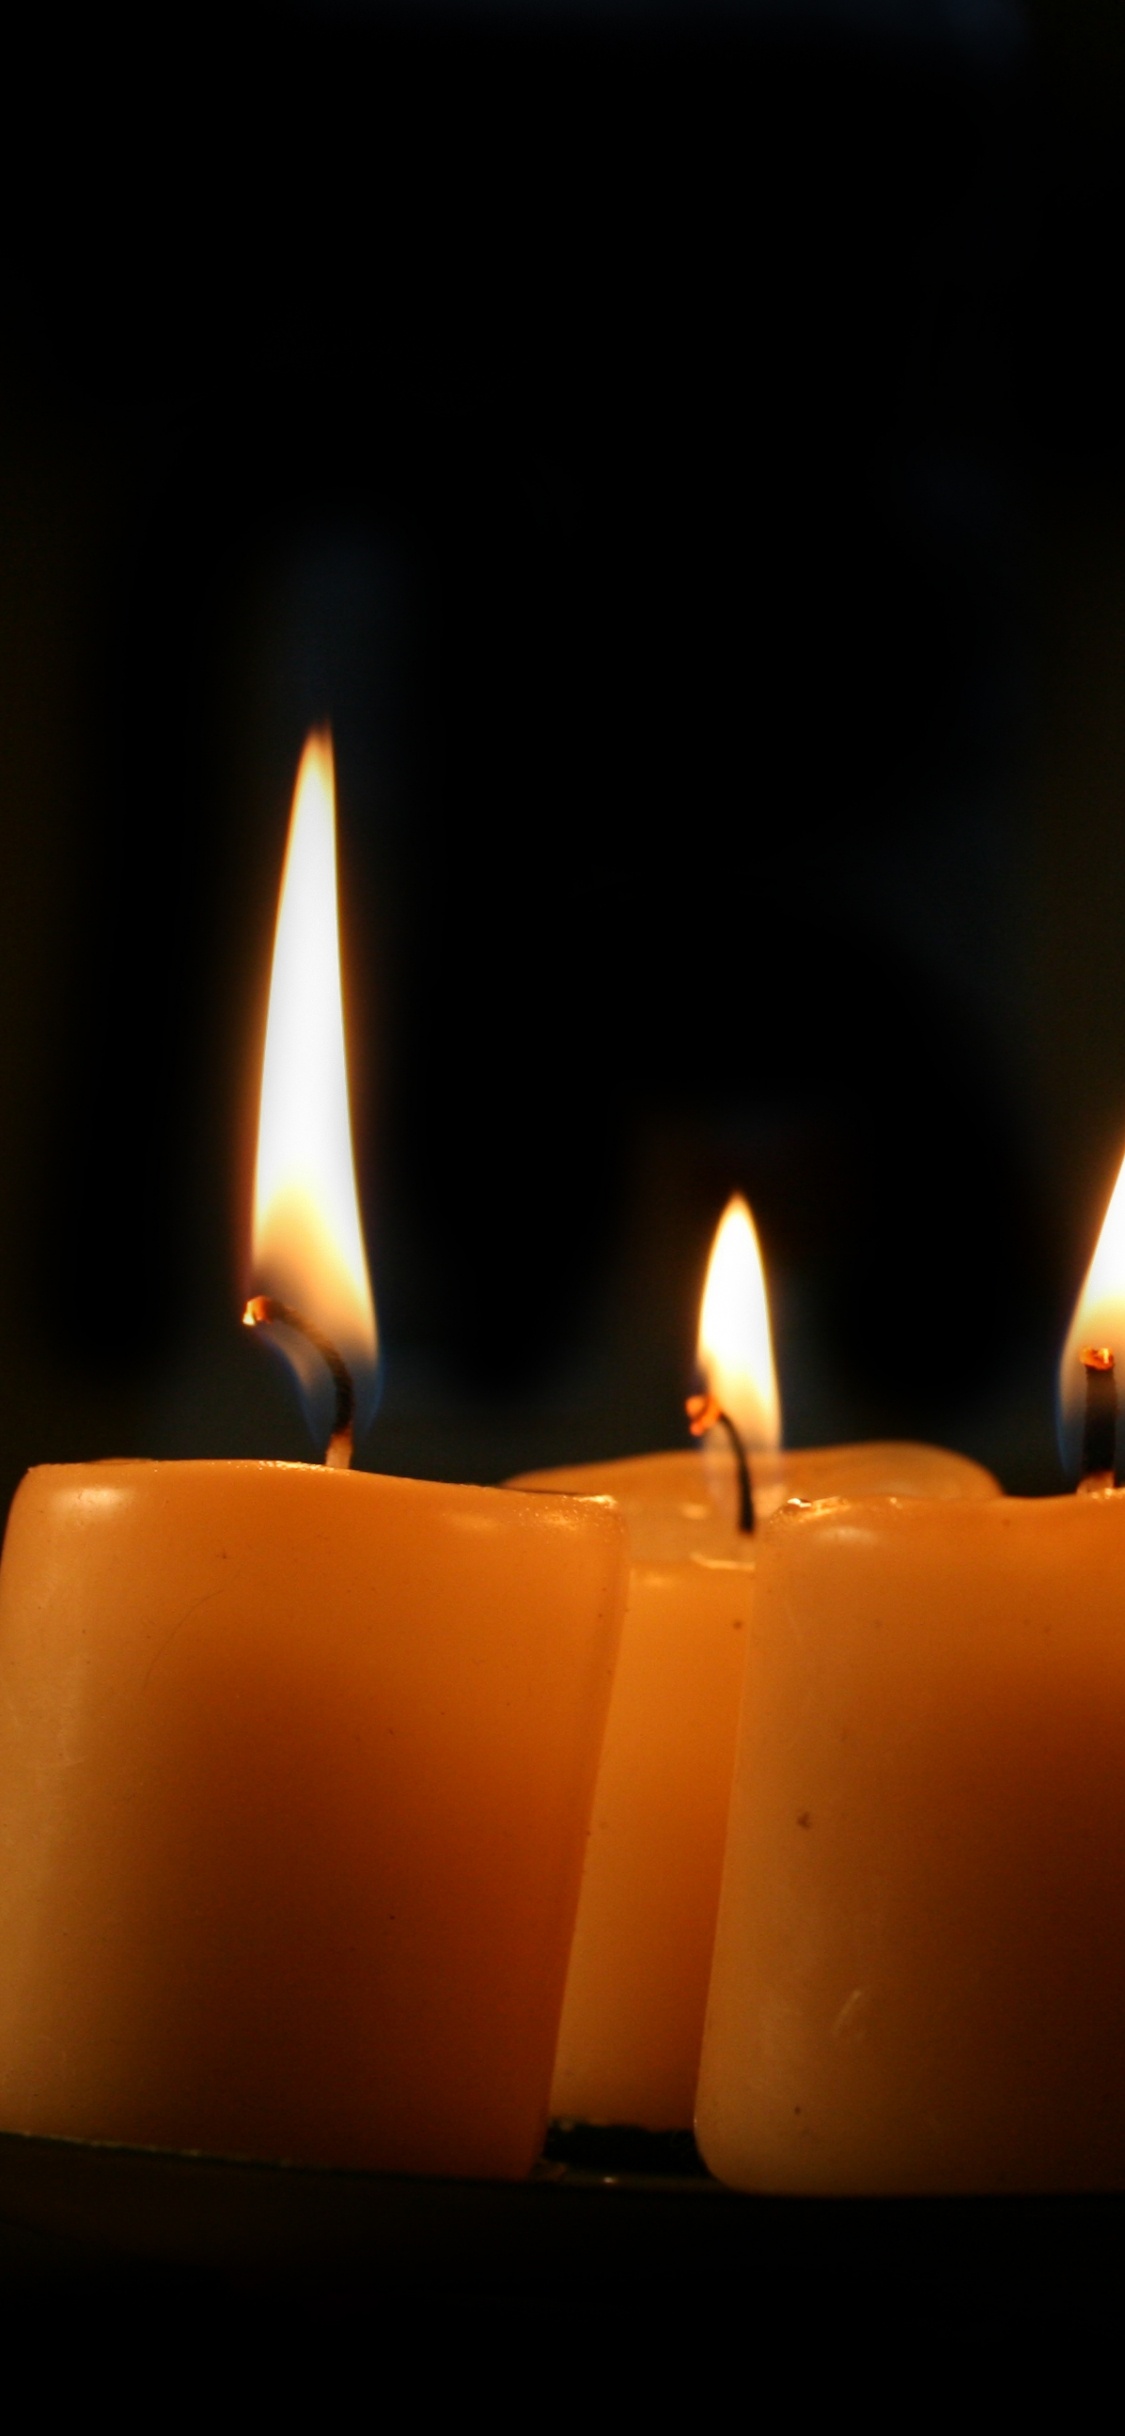 3 Brennende Kerzen Auf Schwarzem Hintergrund. Wallpaper in 1125x2436 Resolution